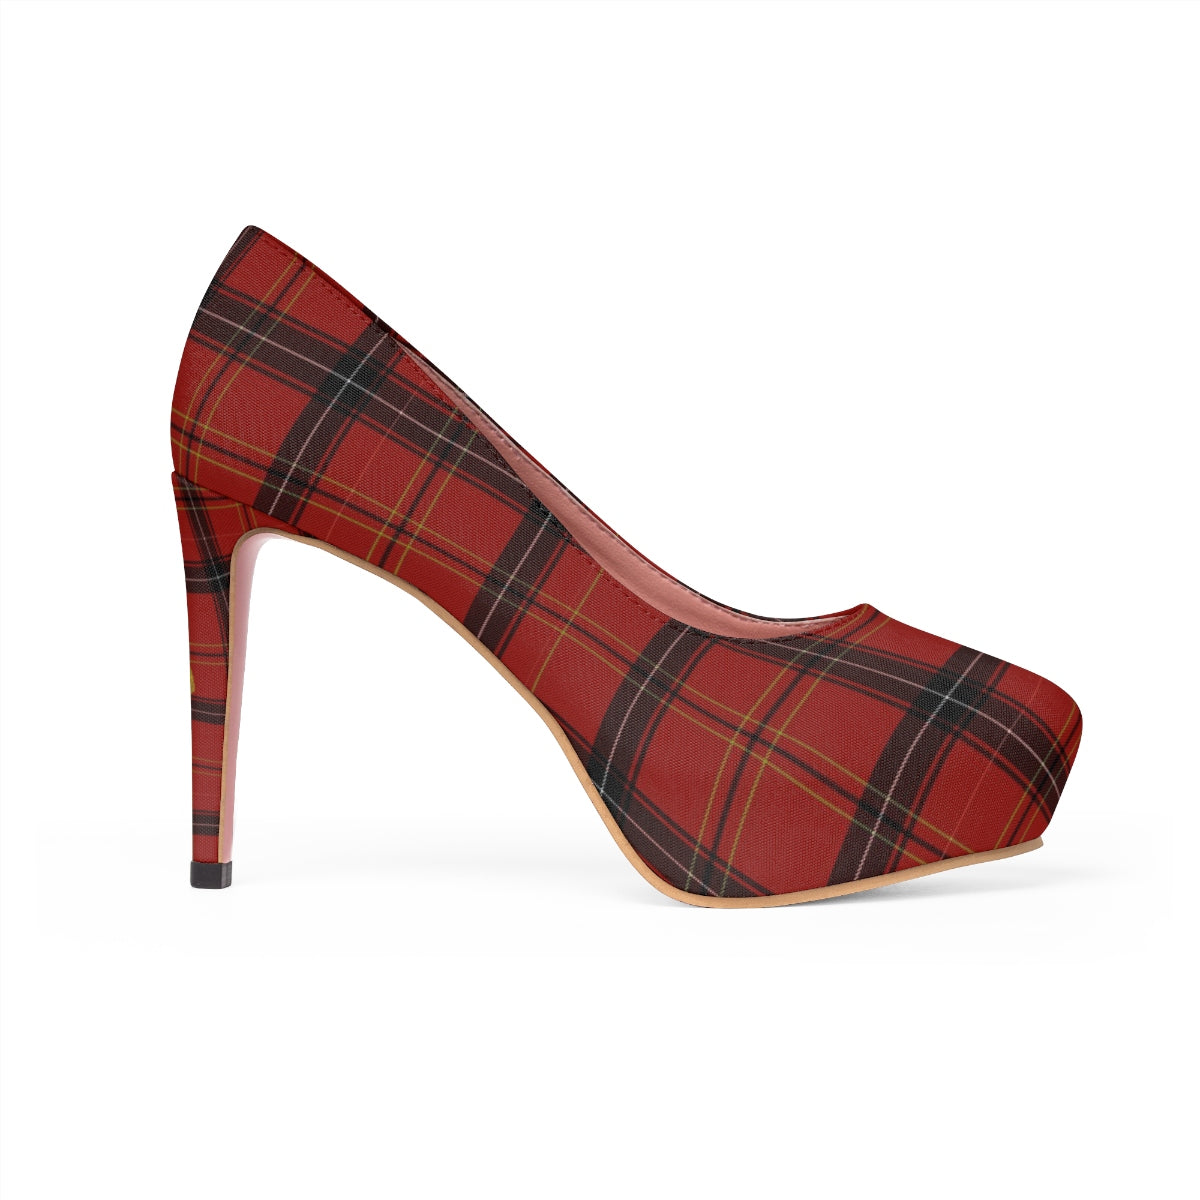 Dark Red Tartan Plaid Scottish Print Women's Platform Heels Pumps (US Size: 5-11)-4 inch Heels-US 7-Heidi Kimura Art LLC